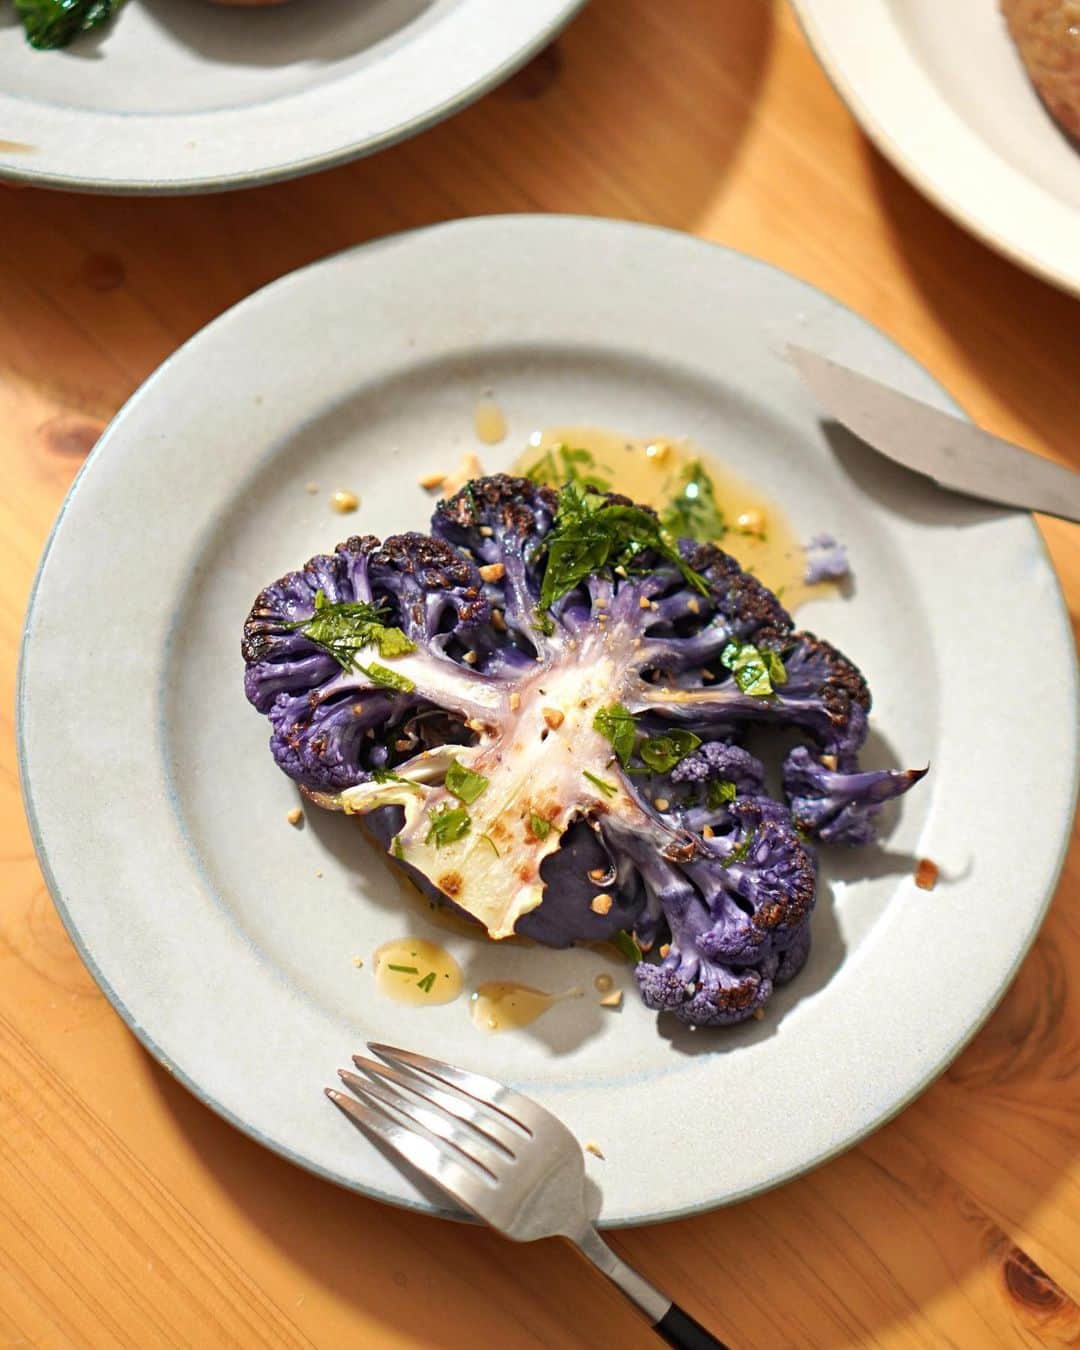 Akihiro Yoshidaのインスタグラム：「紫カリフラワーのステーキ  カリフラワーで一品。  クリスマス雰囲気の流れでいつもと違う感じの食卓に。カリフラワーも食べ応えのある一品になりました。  とても美味しいのでオススメです  #豊洲の極 ( @toyosu_no_kiwami )さんの紫カリフラワーを使って晩ご飯 豊洲の極さんの食材は一般には流通しない高級割烹などのお店向けの食材を扱っており、仲卸さんの目利きがされた極上食材なんです  ■レシピ カリフラワー…1 イタリアンパセリ…適量 ミント…適量 ブラックペッパー…適量 ローズマリー…1 オリーブオイル…大さじ3 にんにく…1片 塩…少々  step1️⃣. ガーリックオイルにローズマリーをあわせる。オイルに刻んだ構想にブラックペッパーを合わせておく step2️⃣.紫カリフラワーを中心の茎をのこして二つステーキ用にきっておく。両端は刻んで塩茹でしてブレンダーでペーストにする。ベーコンをオリーブオイルで炒めて、オリーブオイルだけペーストに混ぜておく step3️⃣. 紫カリフラワーをフライパンで塩をふり蒸し焼きして、皿にペーストとカリフラワーにベーコンをのせて、香草のオイルと砕いたピーナッツをのせて出来上がり  #akihiroy#おうちごはん#料理男子#家庭料理#手作りごはん#今日のごはん#料理記録#献立#料理好きな人と繋がりたい　#手料理#旦那飯 #旦那飯👨‍🍳」